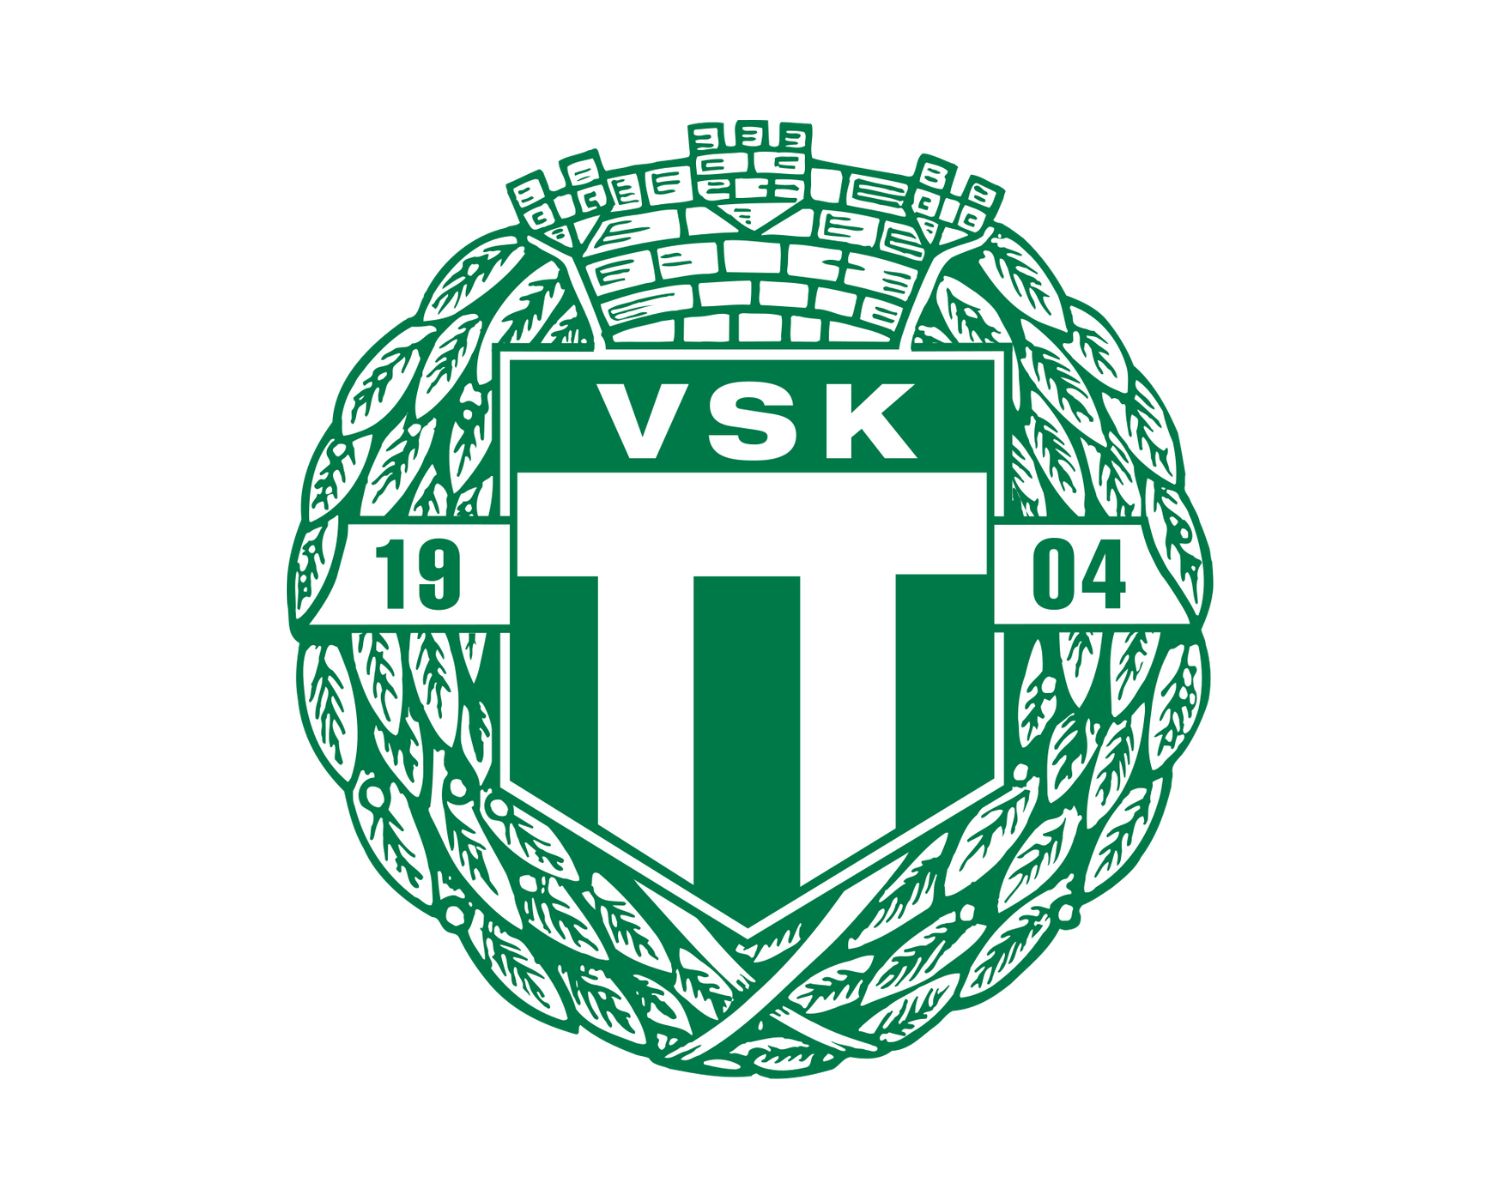 vasteras-sk-21-football-club-facts